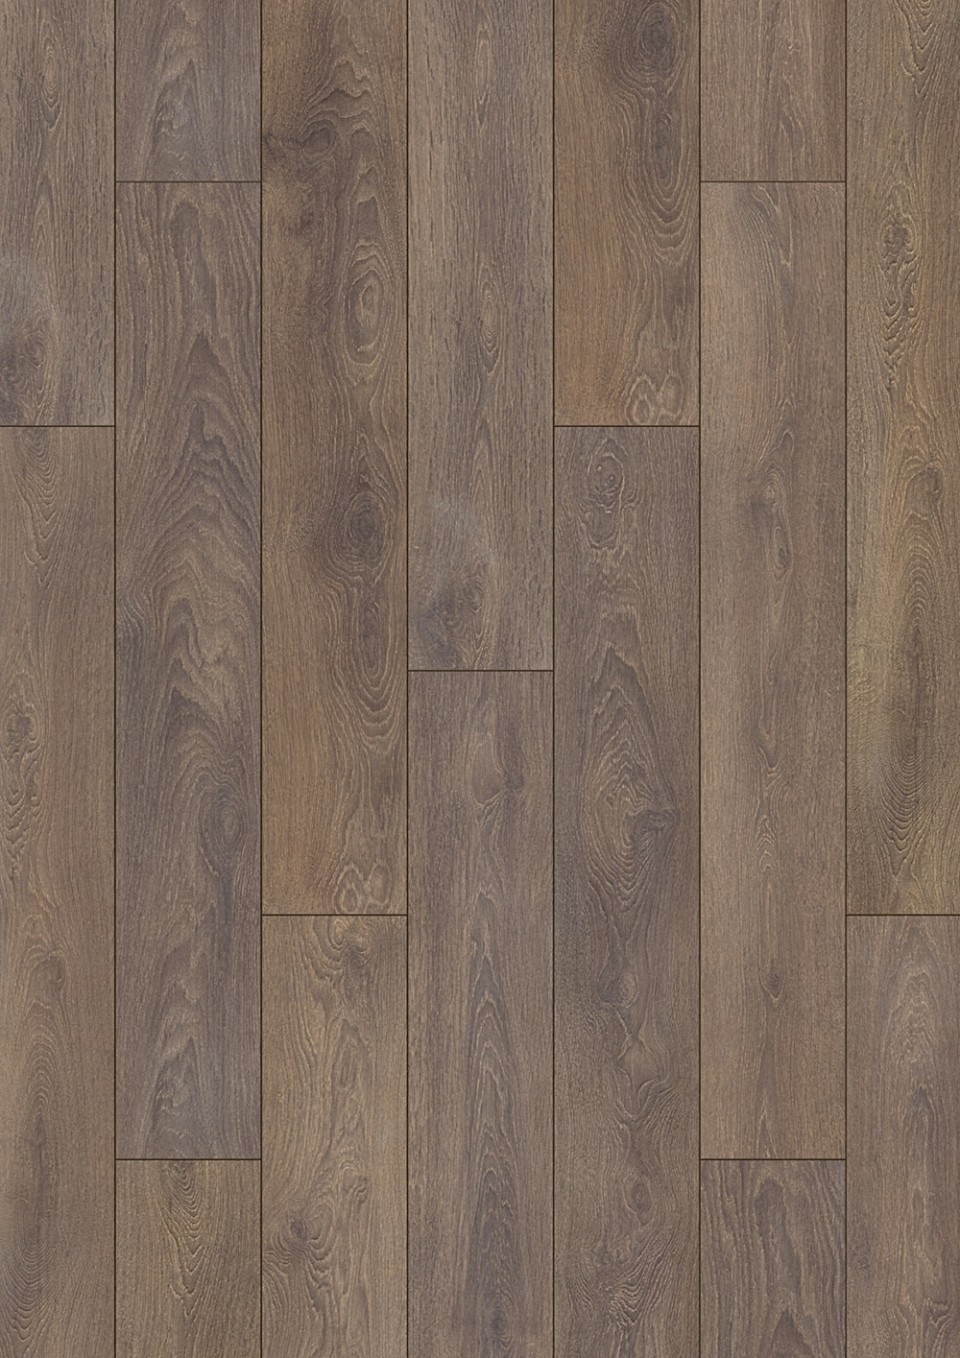 Alpod Floor Expert BINPRO-1579/0 Laminlt padl, CLASSIC AQUA, 1579 oak havana, 8 mm, 1 svos